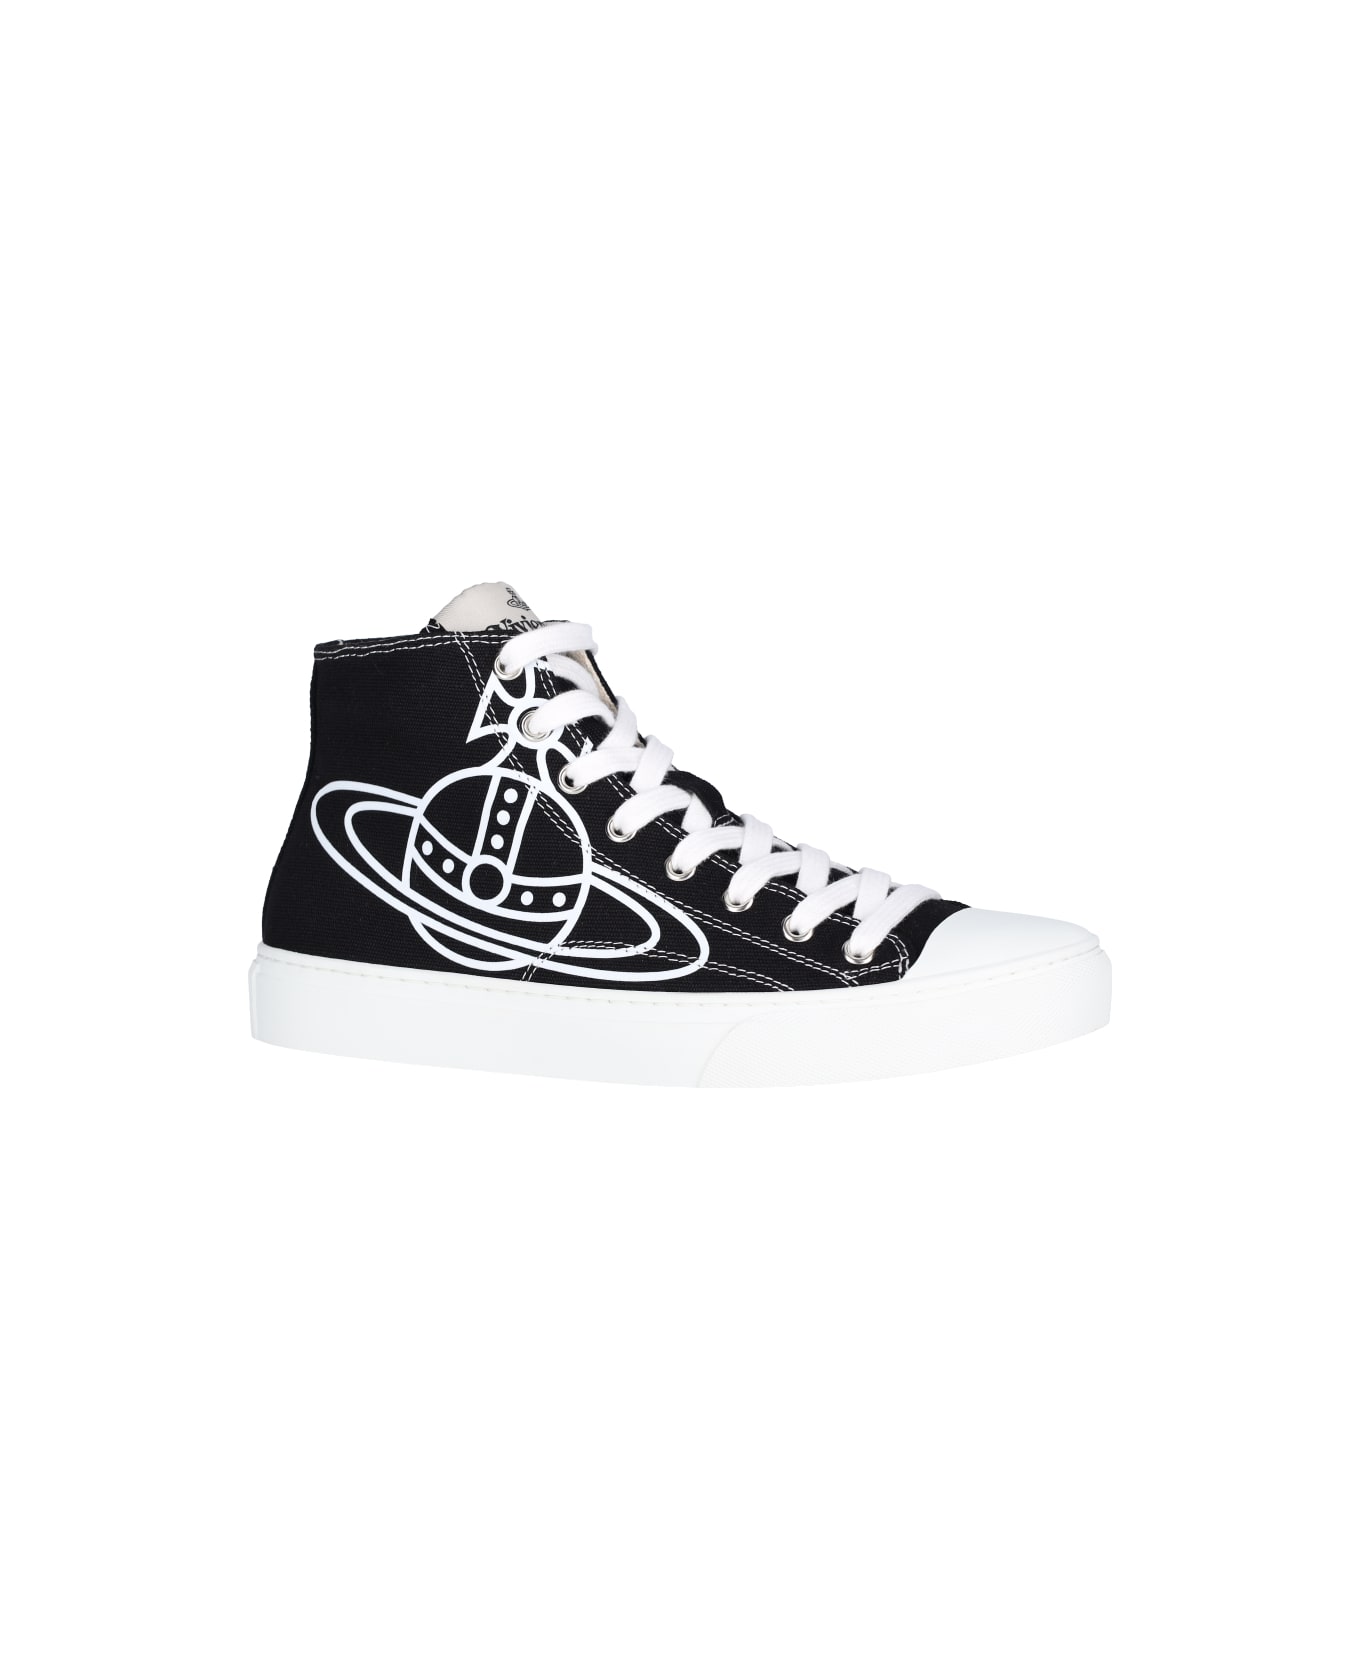 Vivienne Westwood "plimsoll High" Sneakers - Black  